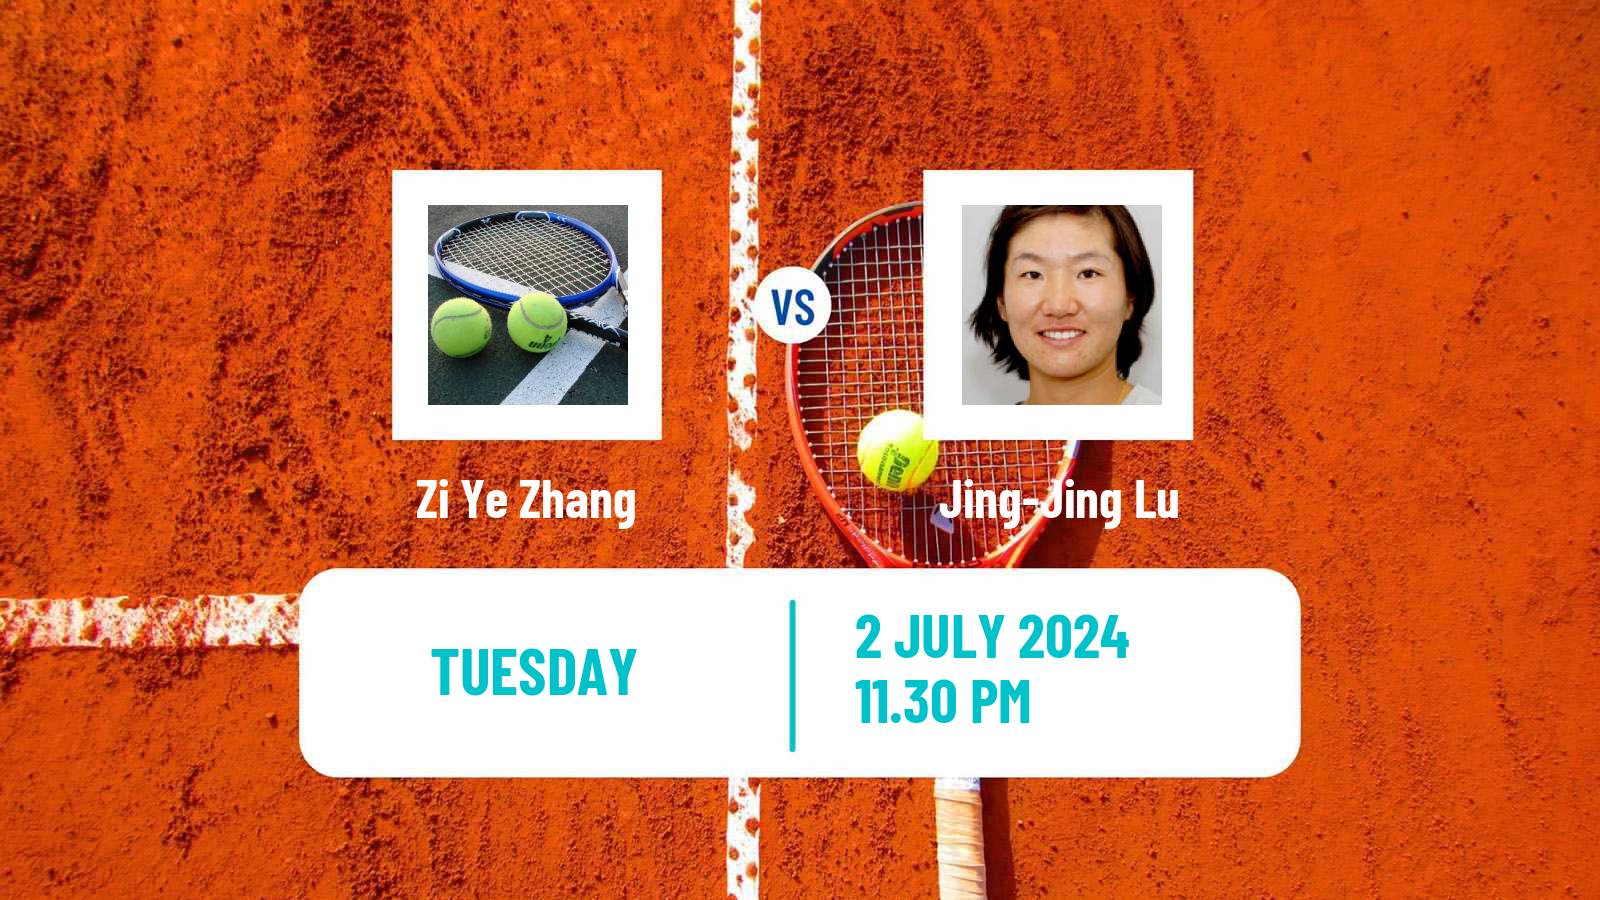 Tennis ITF W15 Tianjin 2 Women Zi Ye Zhang - Jing-Jing Lu